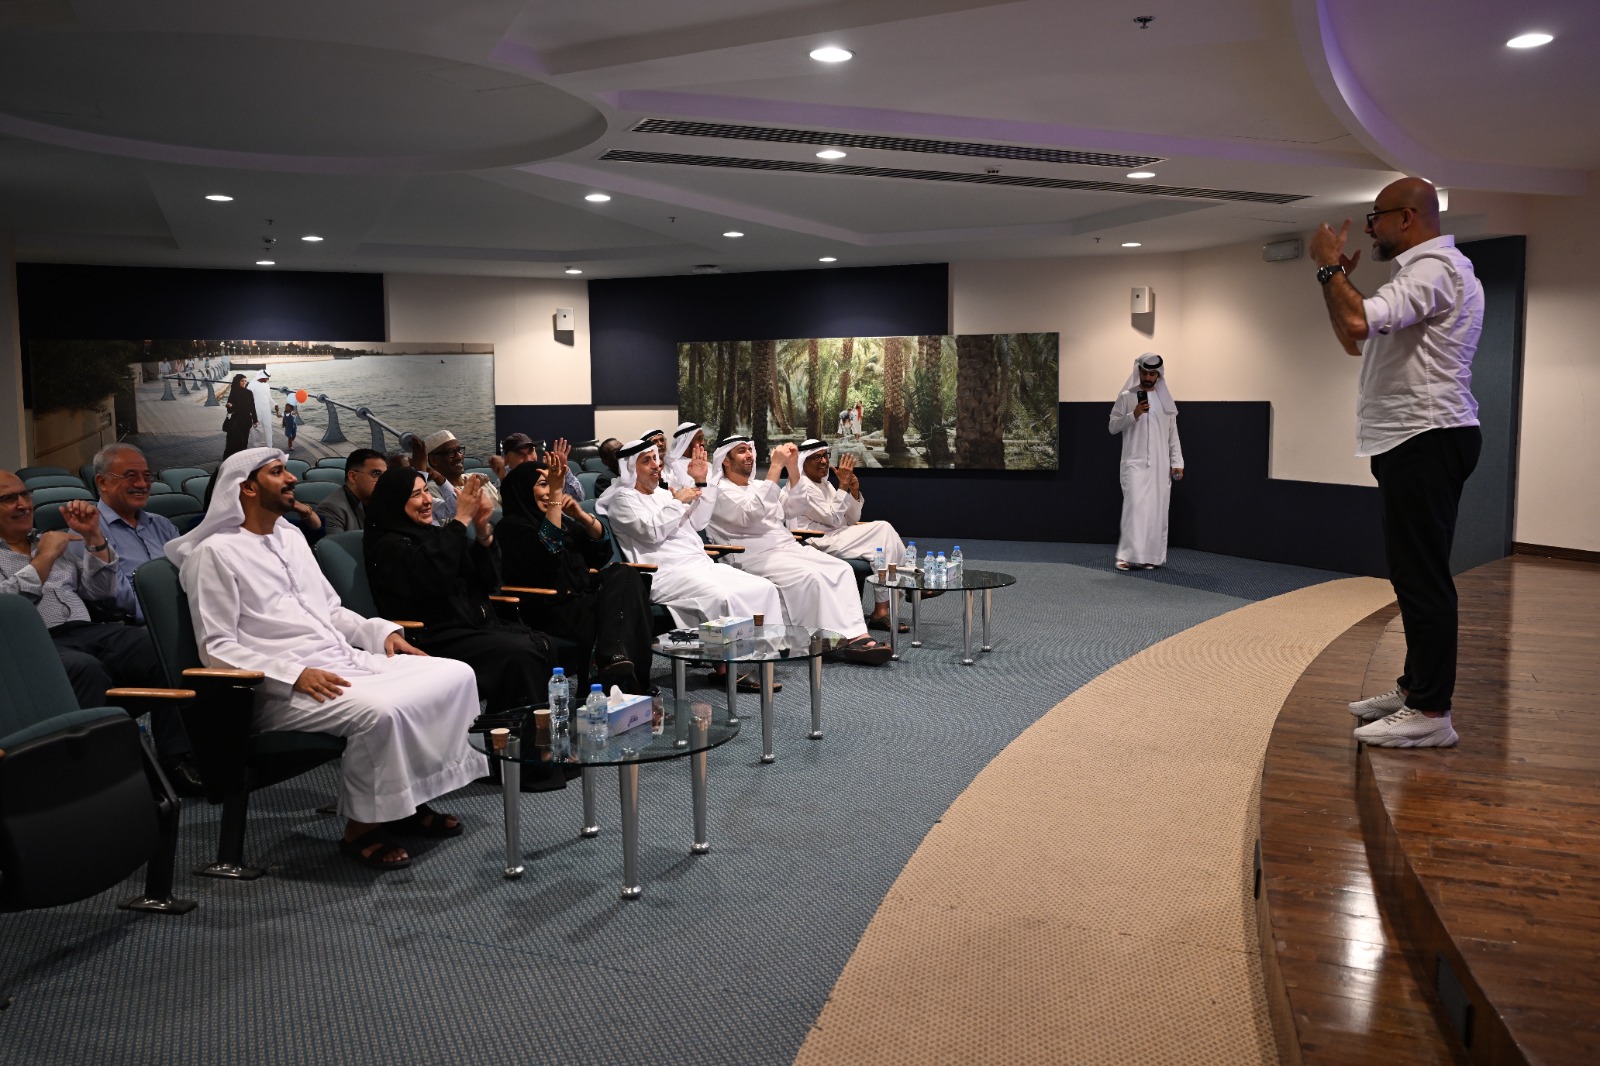 رئيسة جمعية الصحفيين الإماراتية: حريصون على تنظيم أنشطة وفعالية متنوعة وثرية بالشراكة مع الأعضاء